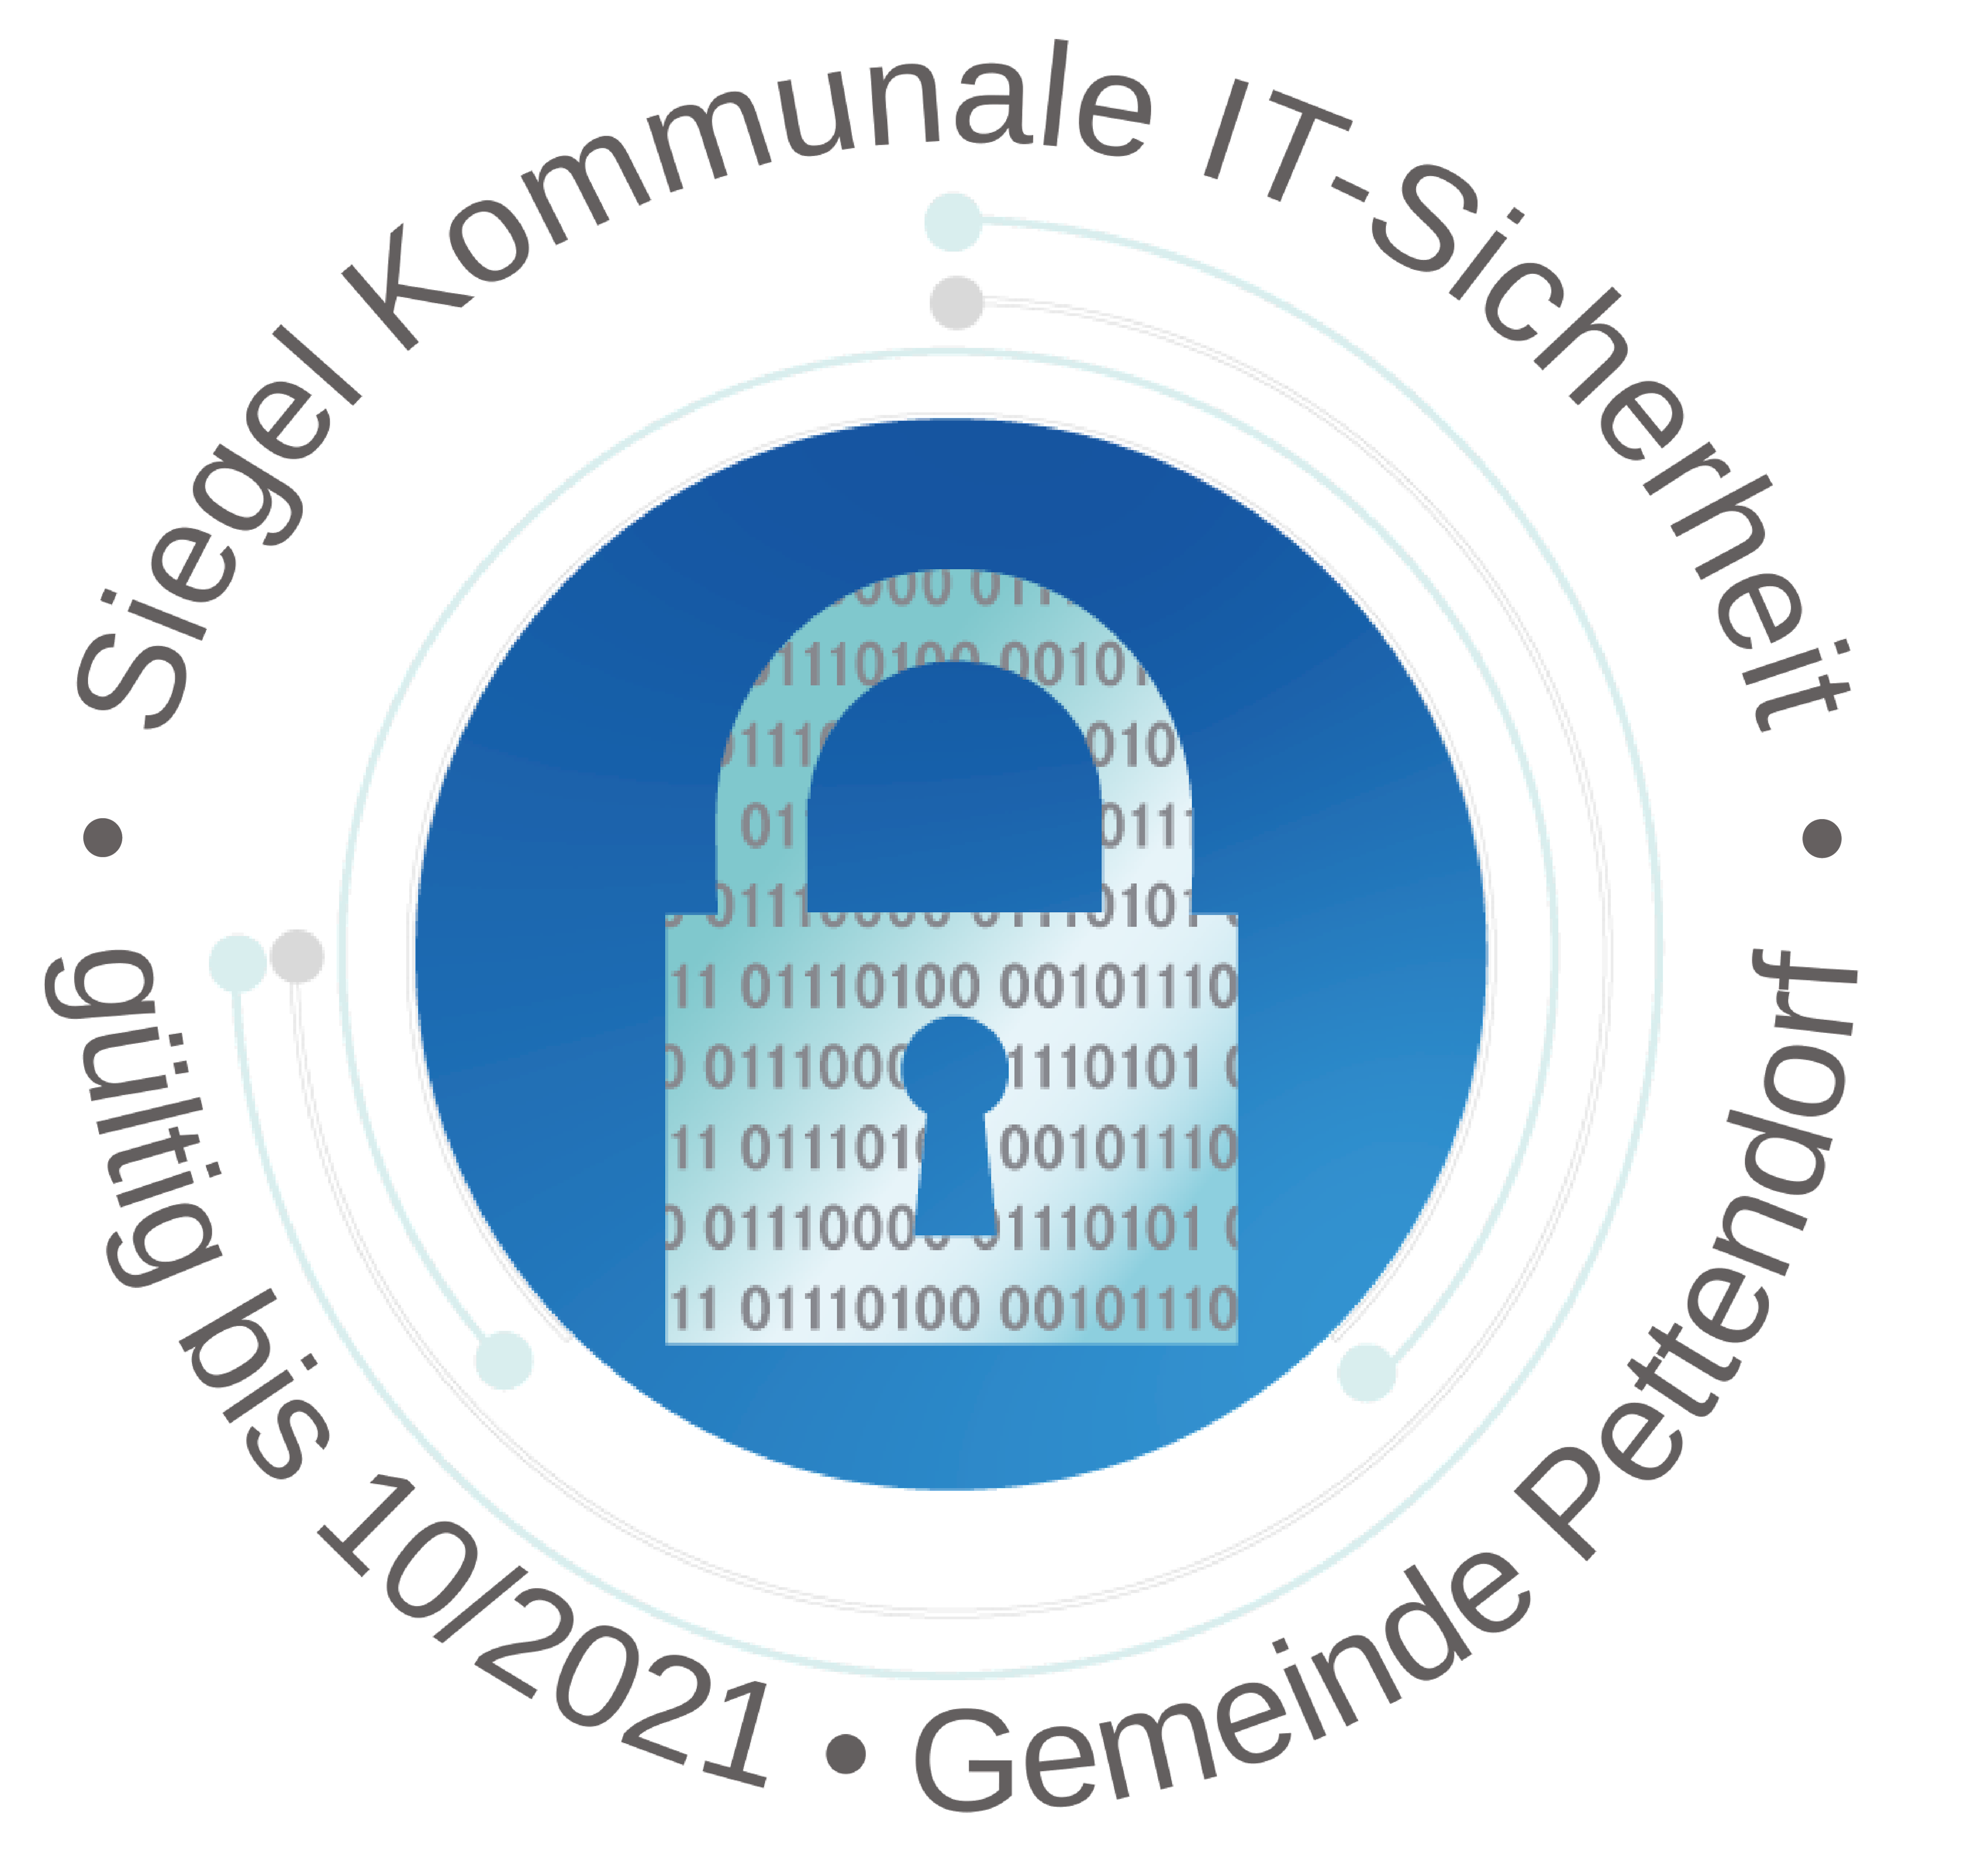 Die Gemeinde Pettendorf hat das Siegel "Kommunale IT-Sicherheit" des Landesamtes für Sicherheit in der Informationstechnik (LSI) erworben, um die Daten Ihrer Bürgerinnen und Bürger auch weiterhin sicher verwalten zu können und sie vor unberechtigtem Zugriff zu schützen.